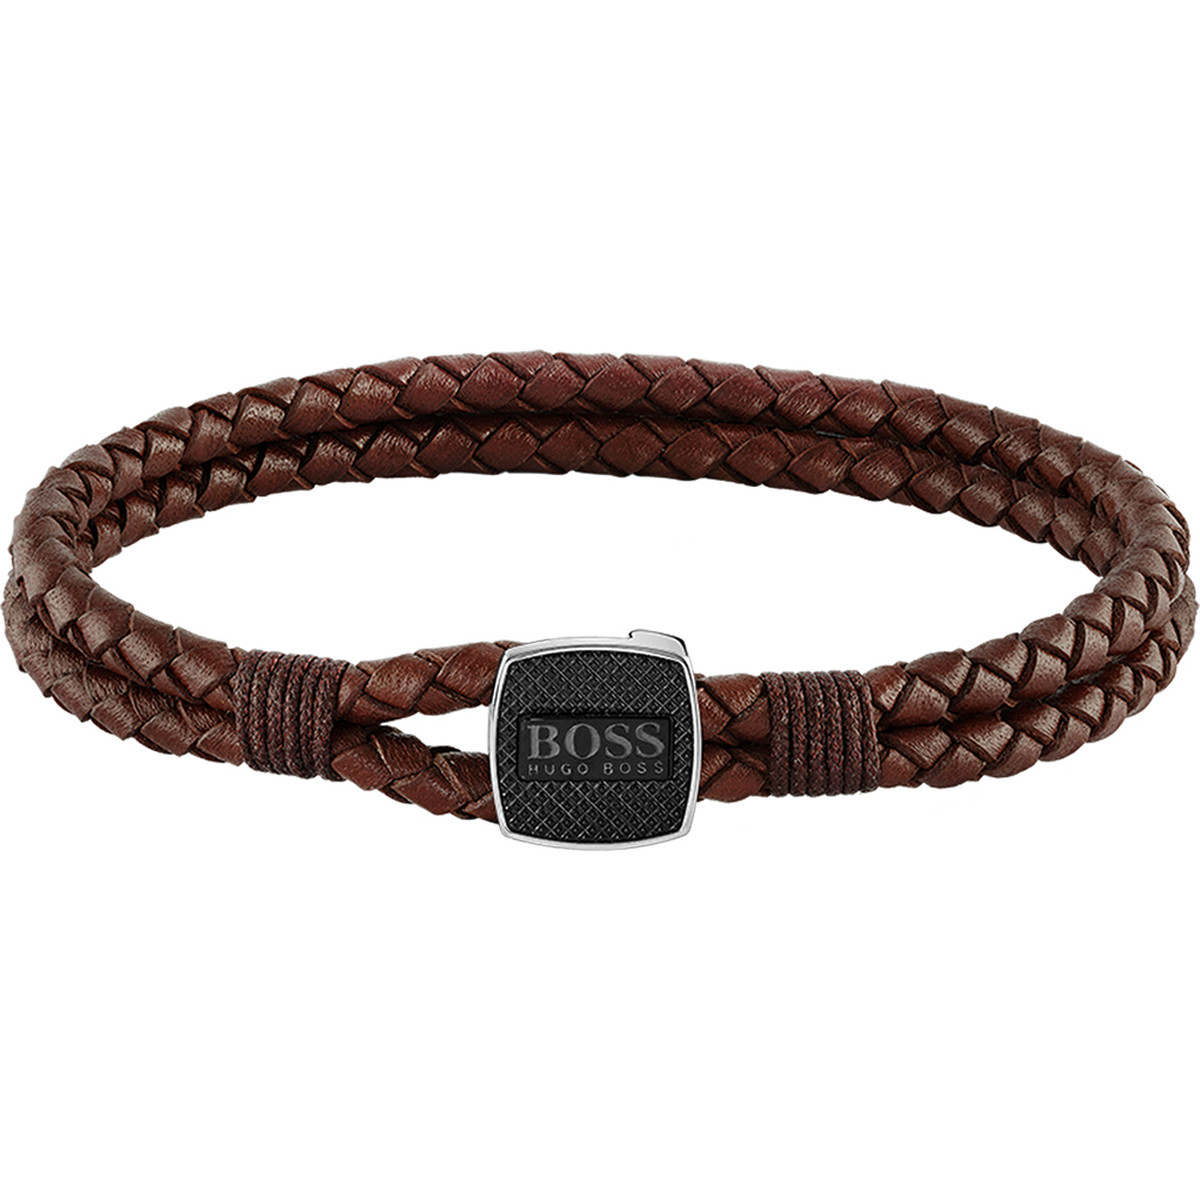 Bracelet homme Boss cuir marron acier noir 17,5 cm